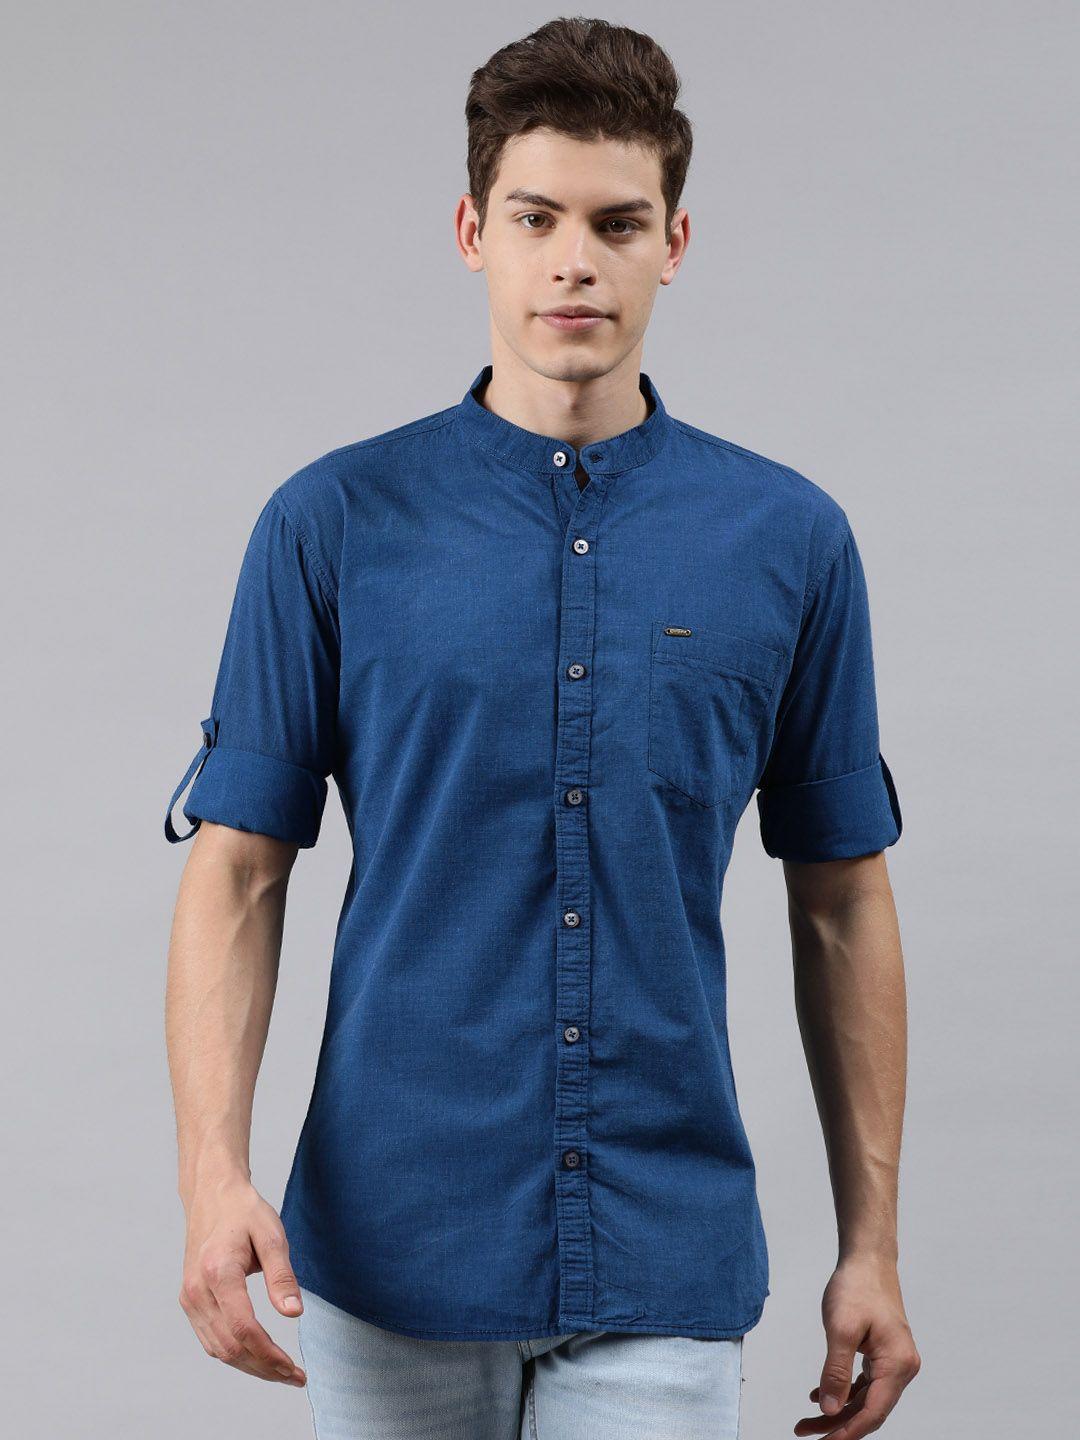 urbano fashion men navy blue slim fit solid casual shirt